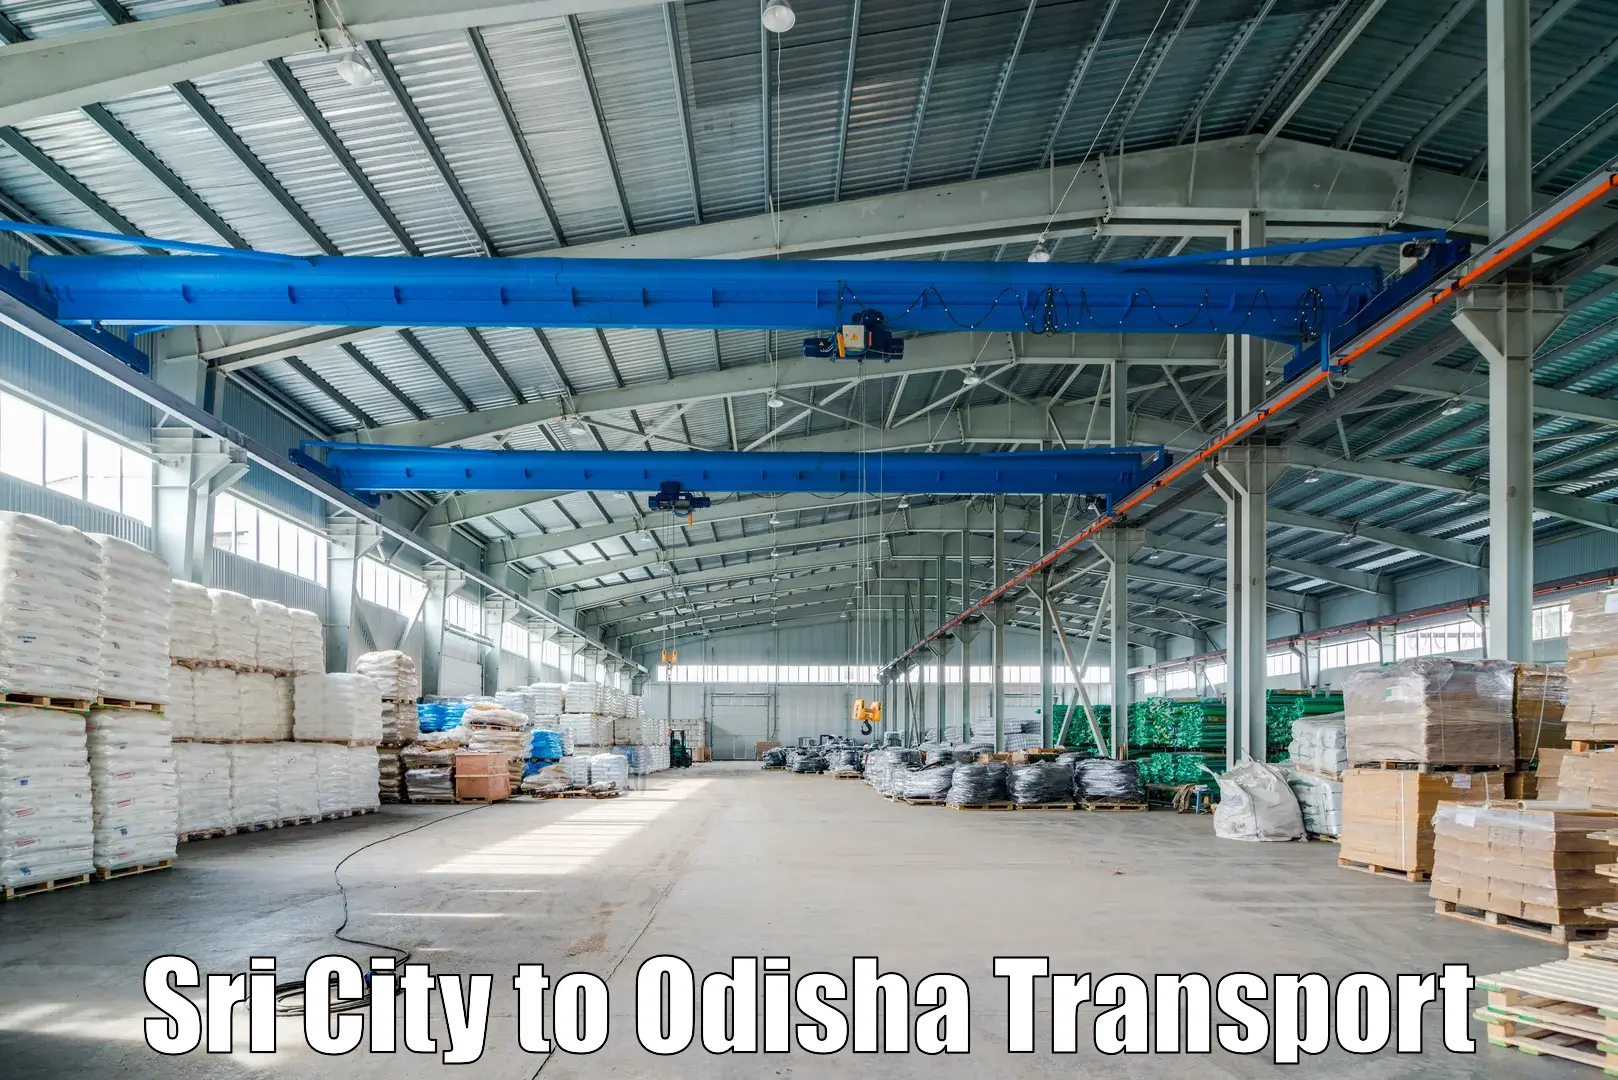 Delivery service in Sri City to Odisha